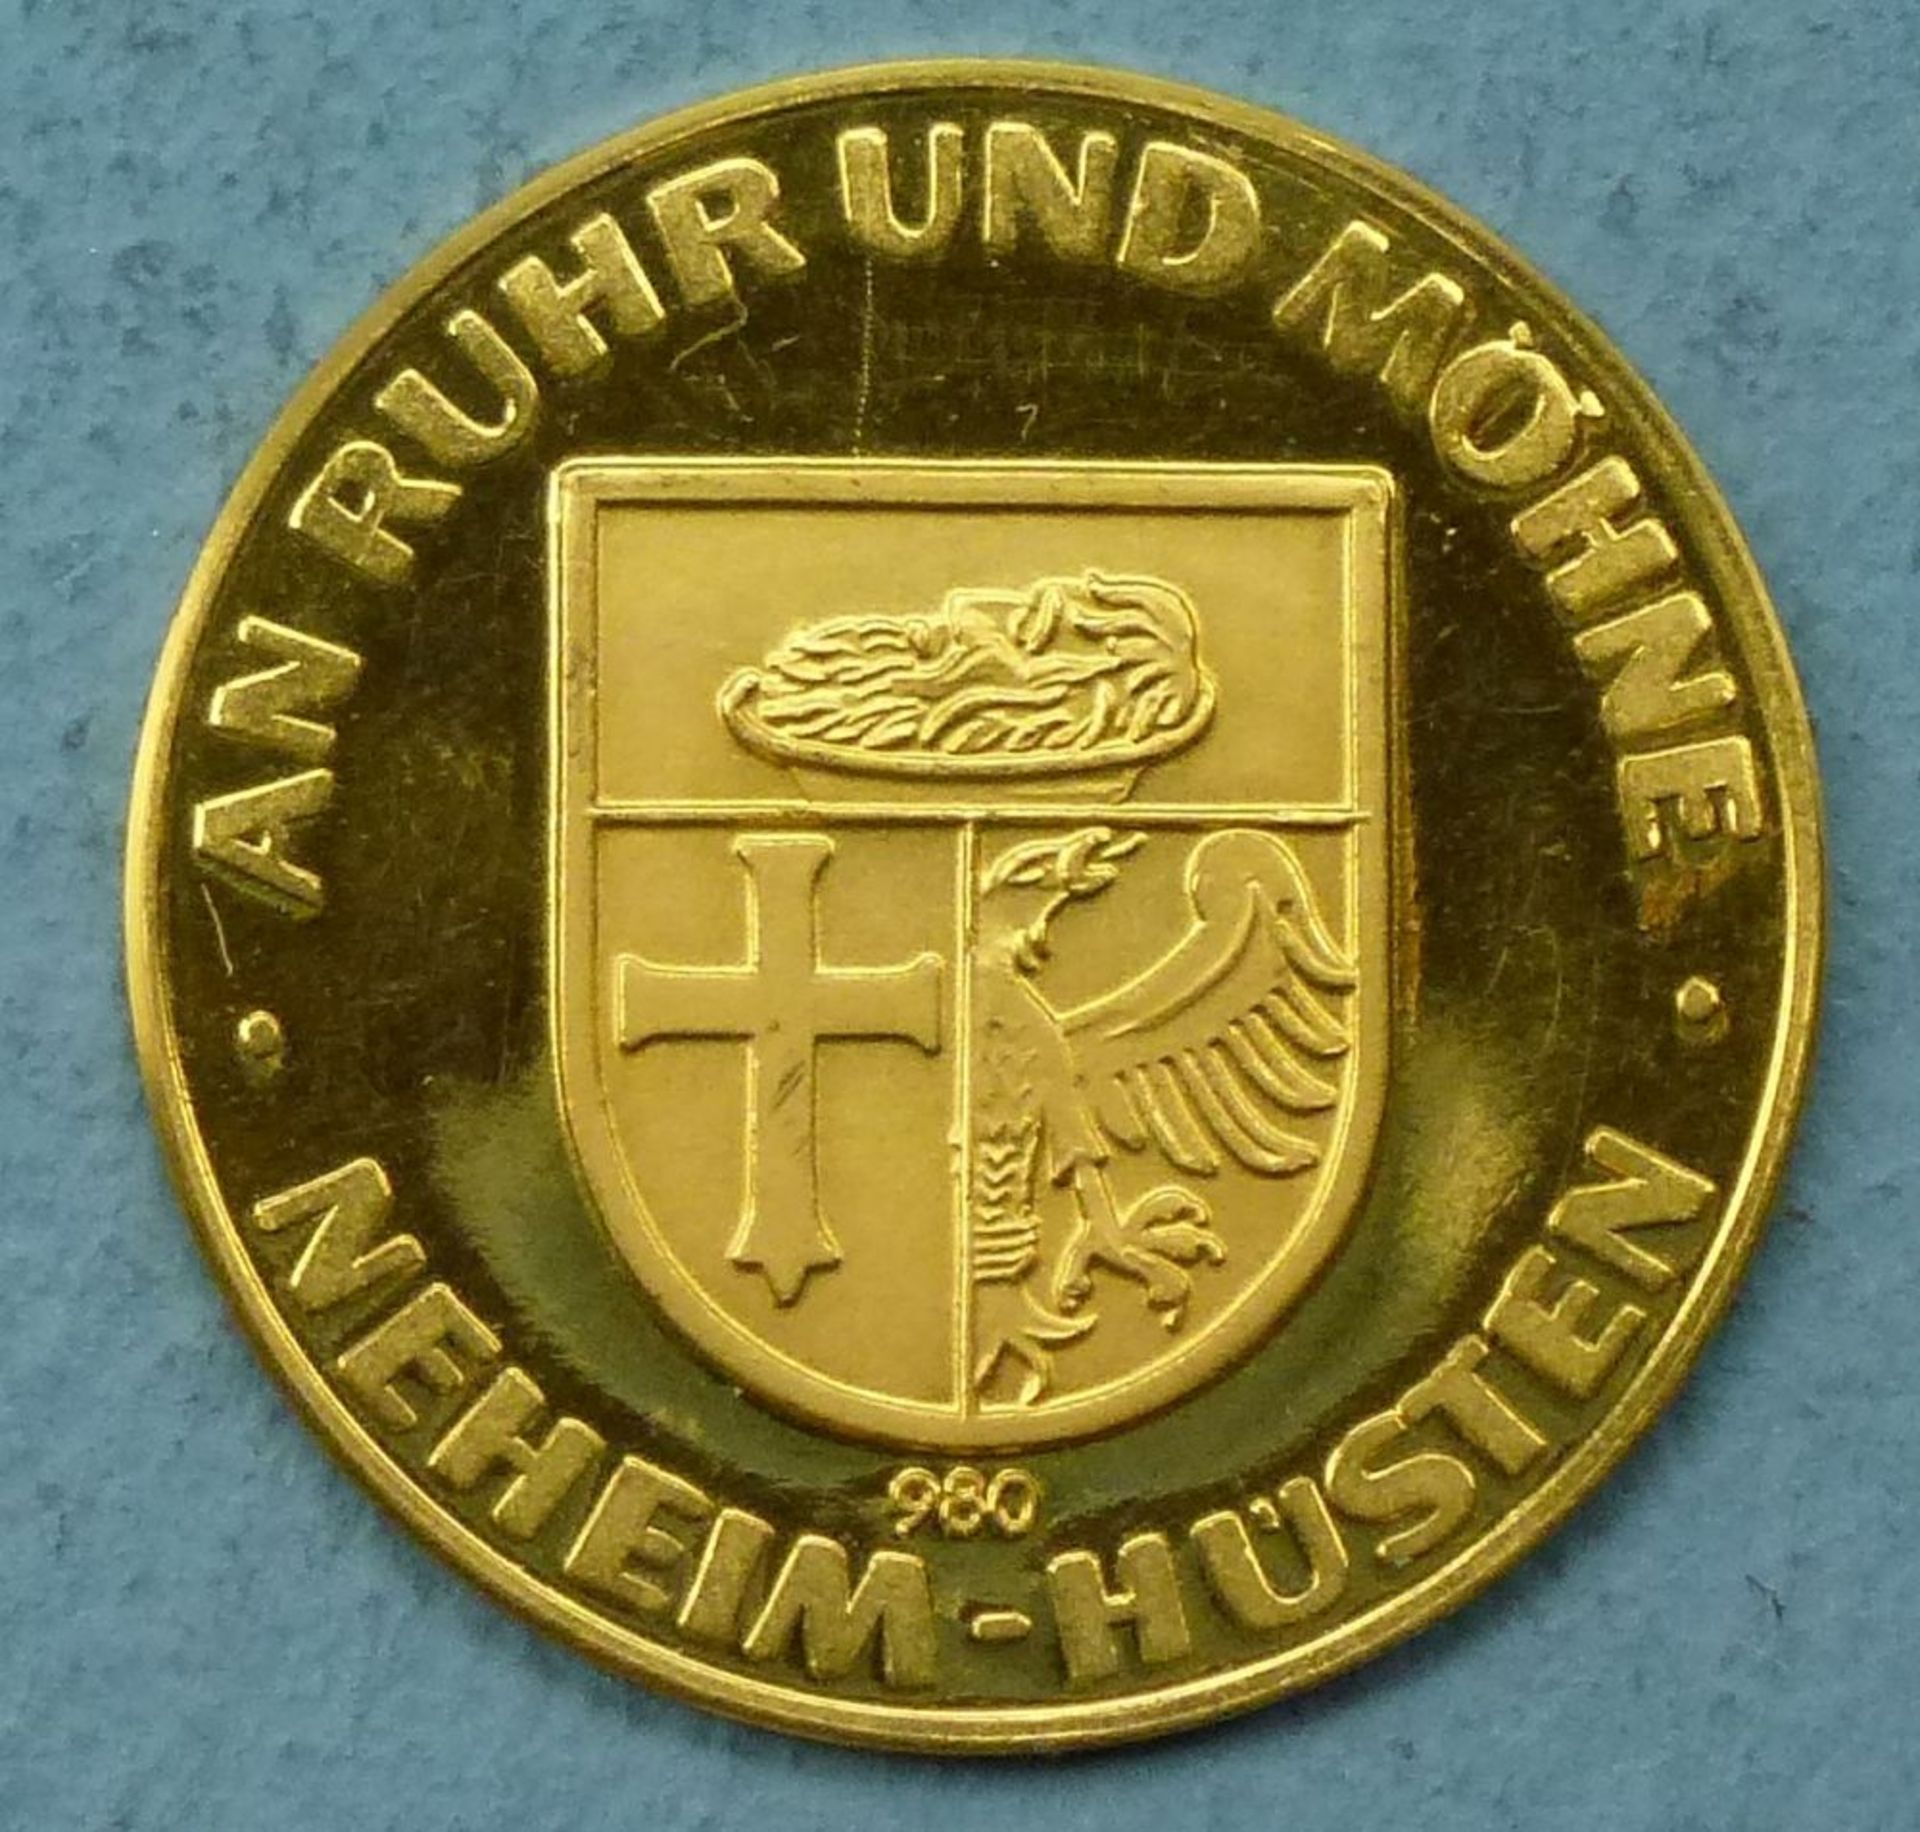 Goldmünze "Tor zum Sauerland Neheim-Hüsten"980er, 3,48 g, feine Kratzer, sonst guter Zustand - Bild 2 aus 2